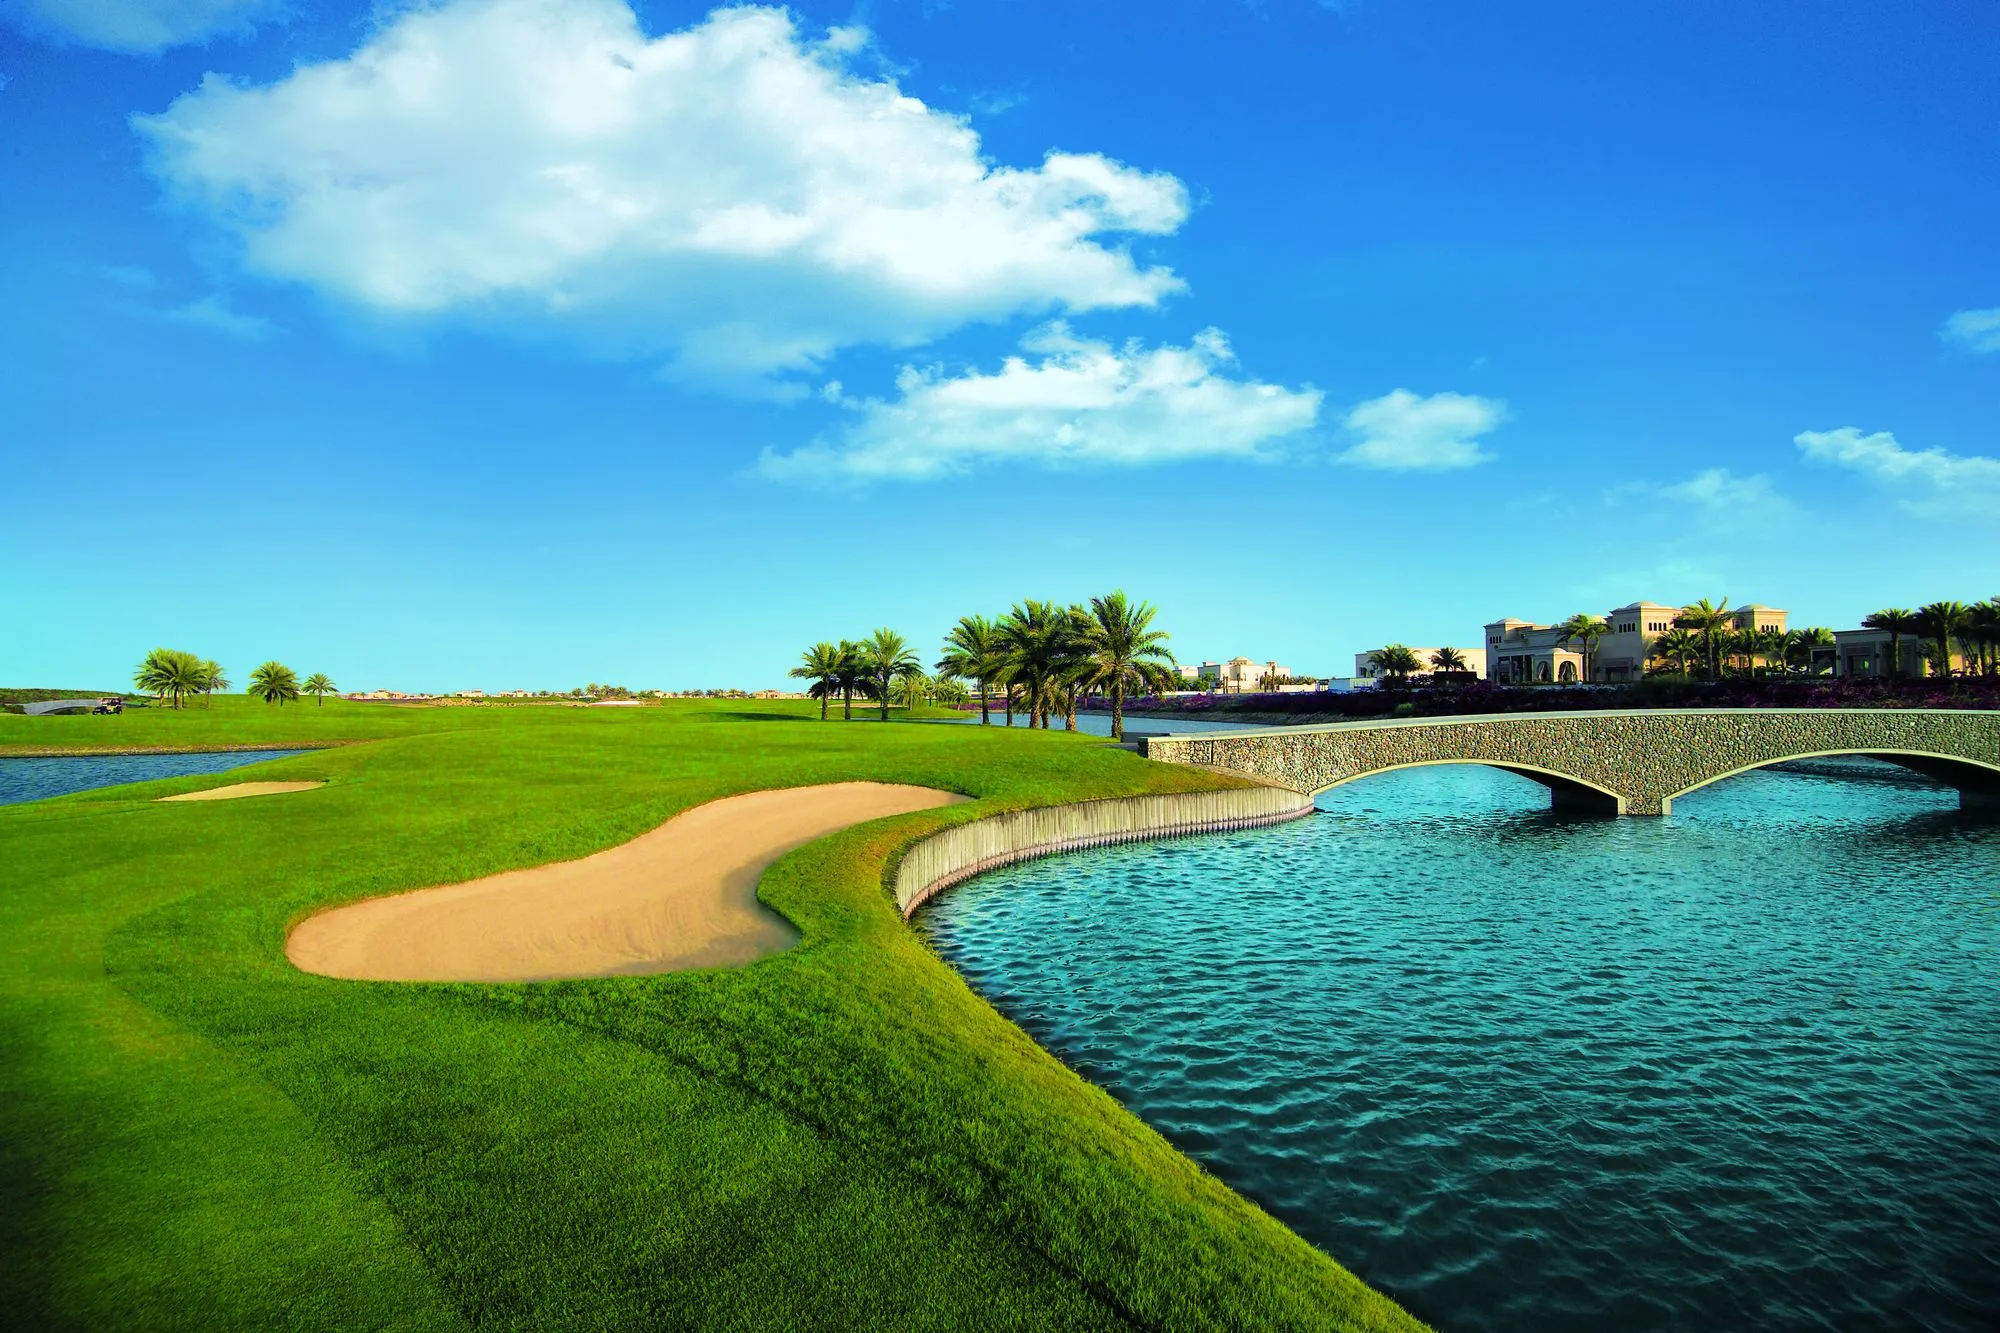 Arabian Ranches Golf Club - одно из лучших гольф-полей в Дубае, ОАЭ.